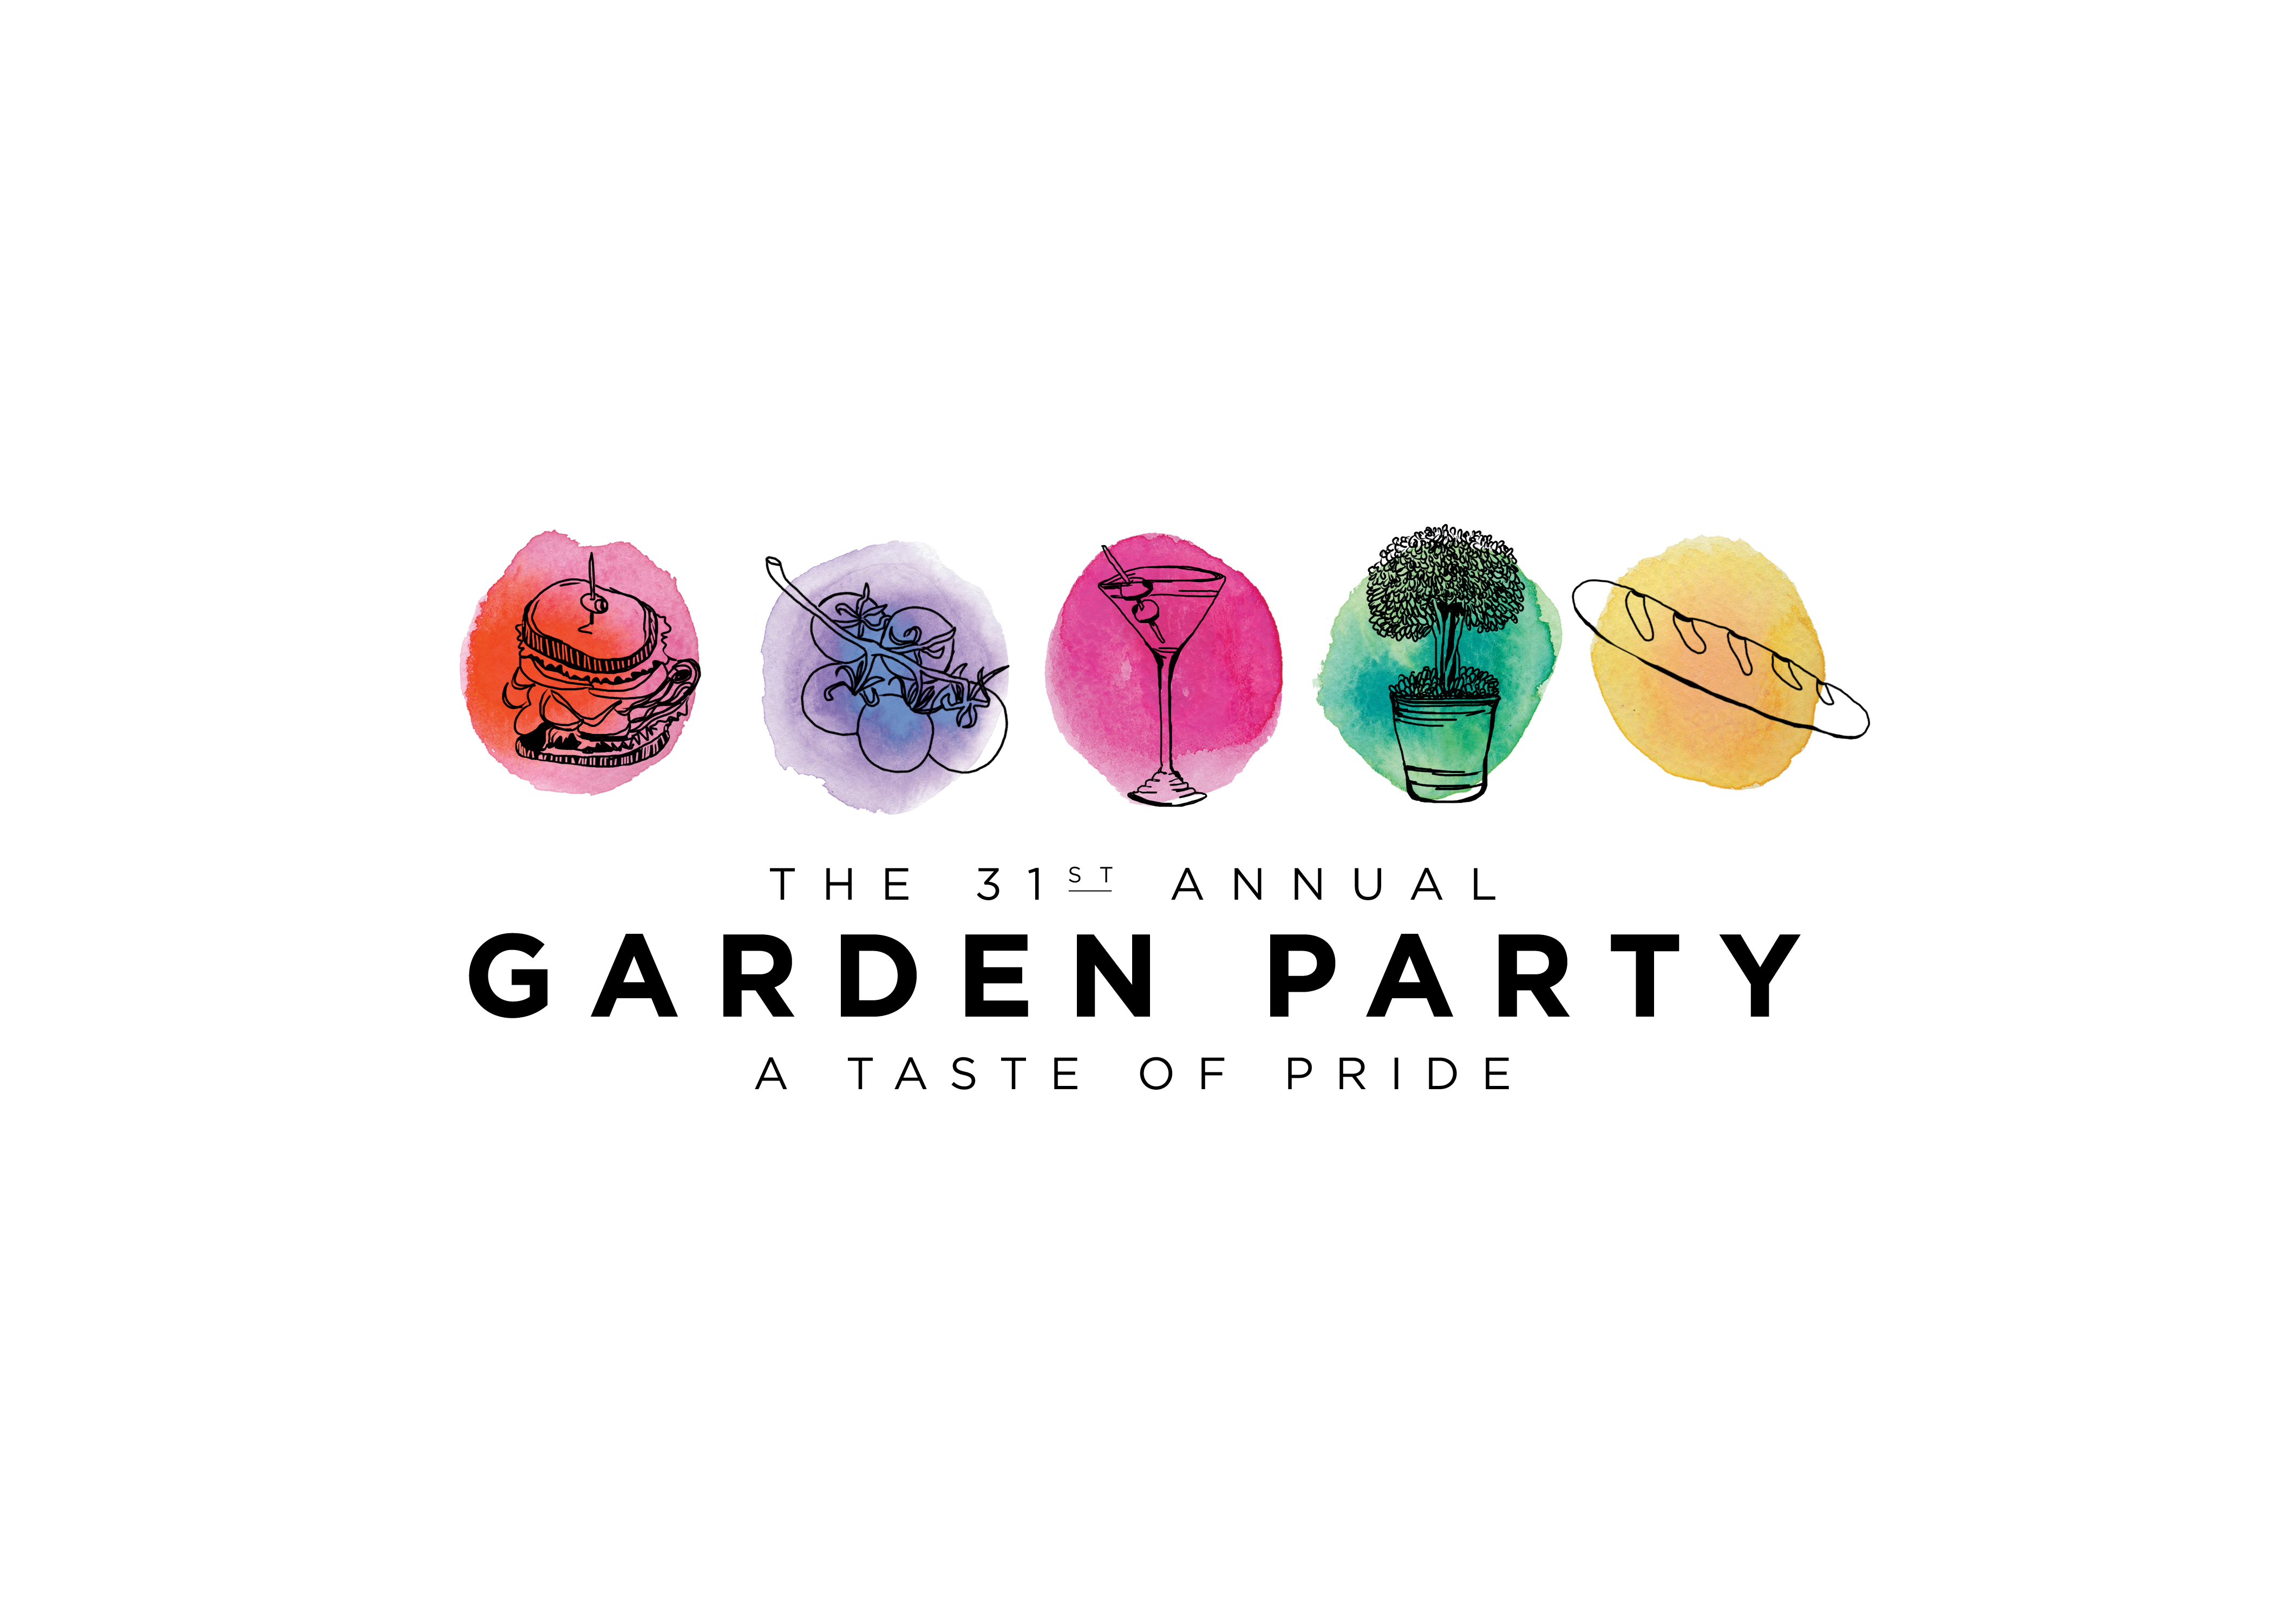 The Center Garden Party